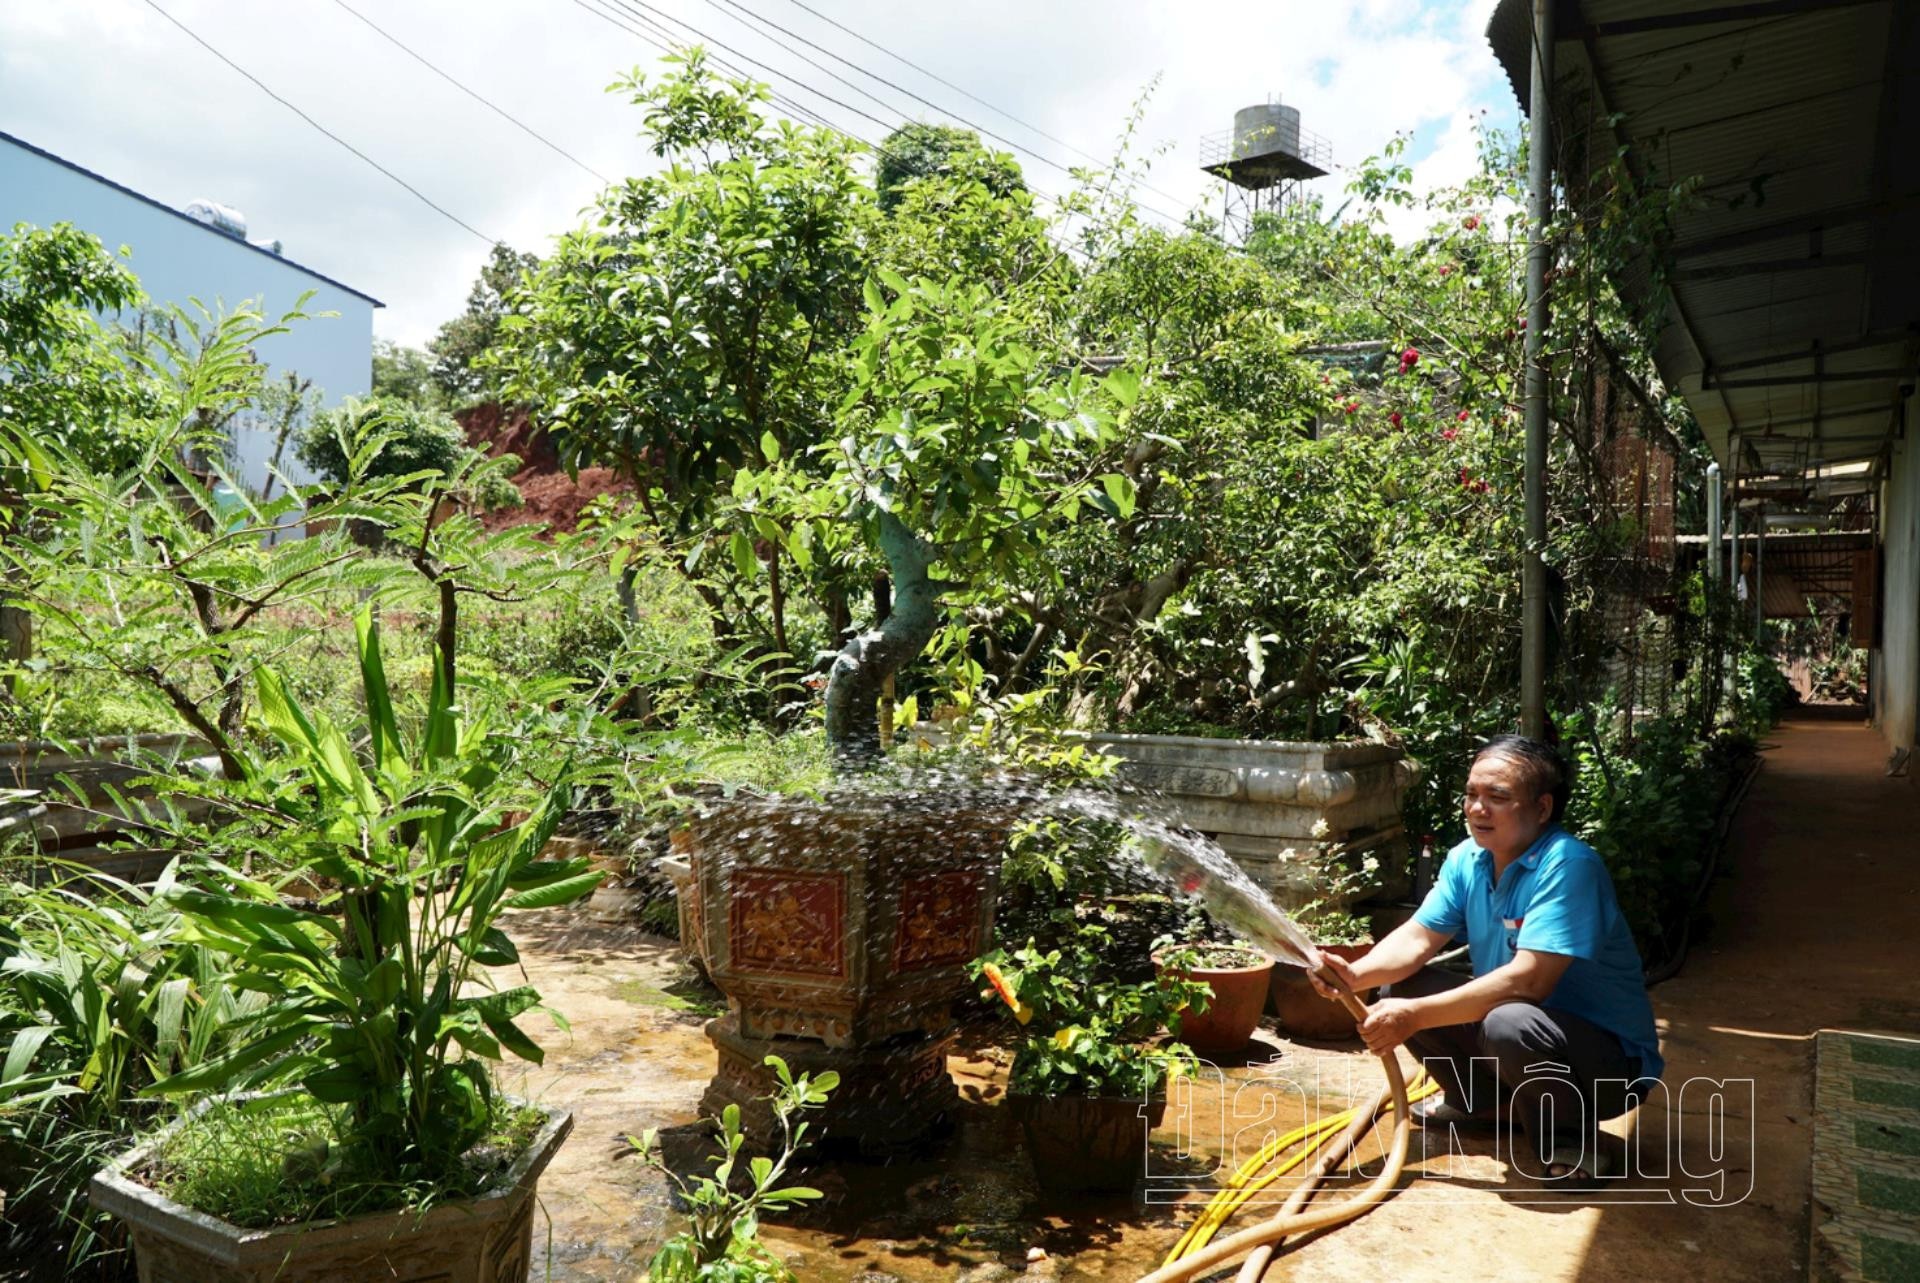 Ông Vũ Văn Bàn, ở bon Bu Nơ B, xã Quảng Tâm, huyện Tuy Đức ở sát công trình nước sạch nhưng sau nhiều năm công trình hư hỏng, ông đã đầu tư giếng khoan để chủ động nước sinh hoạt